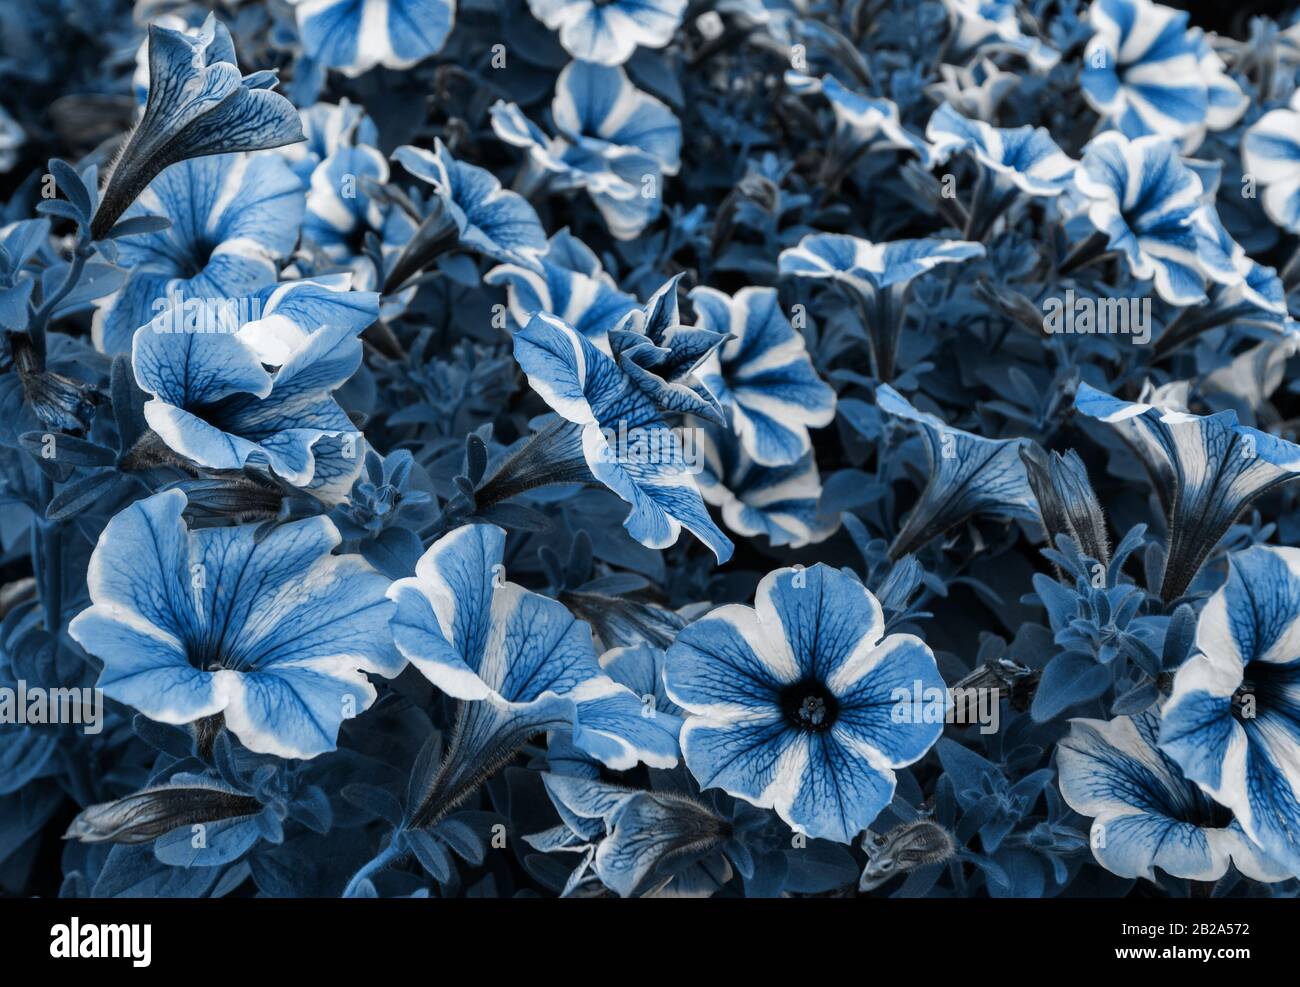 Blumen mit Farbanpassung für Pantone 19-4052 Classic Blue, Farbe des Jahres 2020. Pantone Farbe des Jahres 2020. Stockfoto